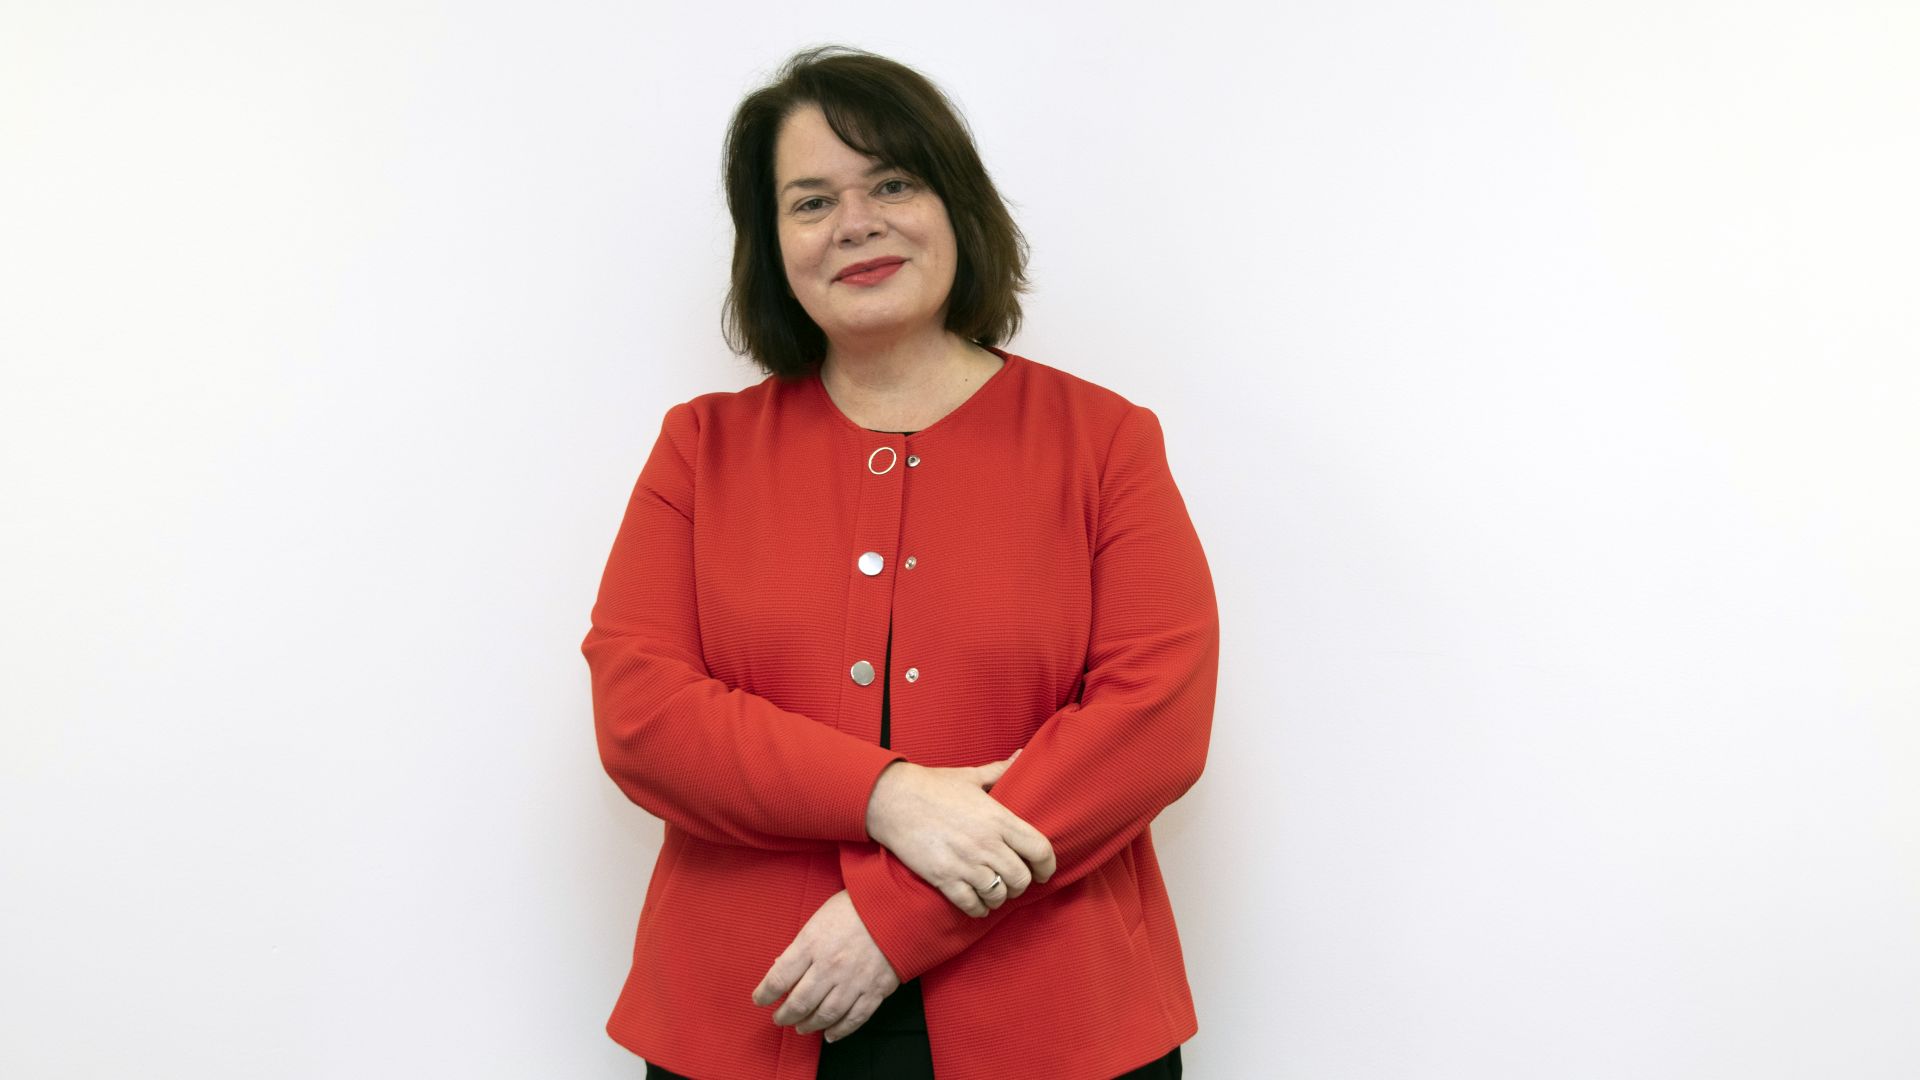 Nieves Feijóo, nueva directora de conferencias de IDC e IDG